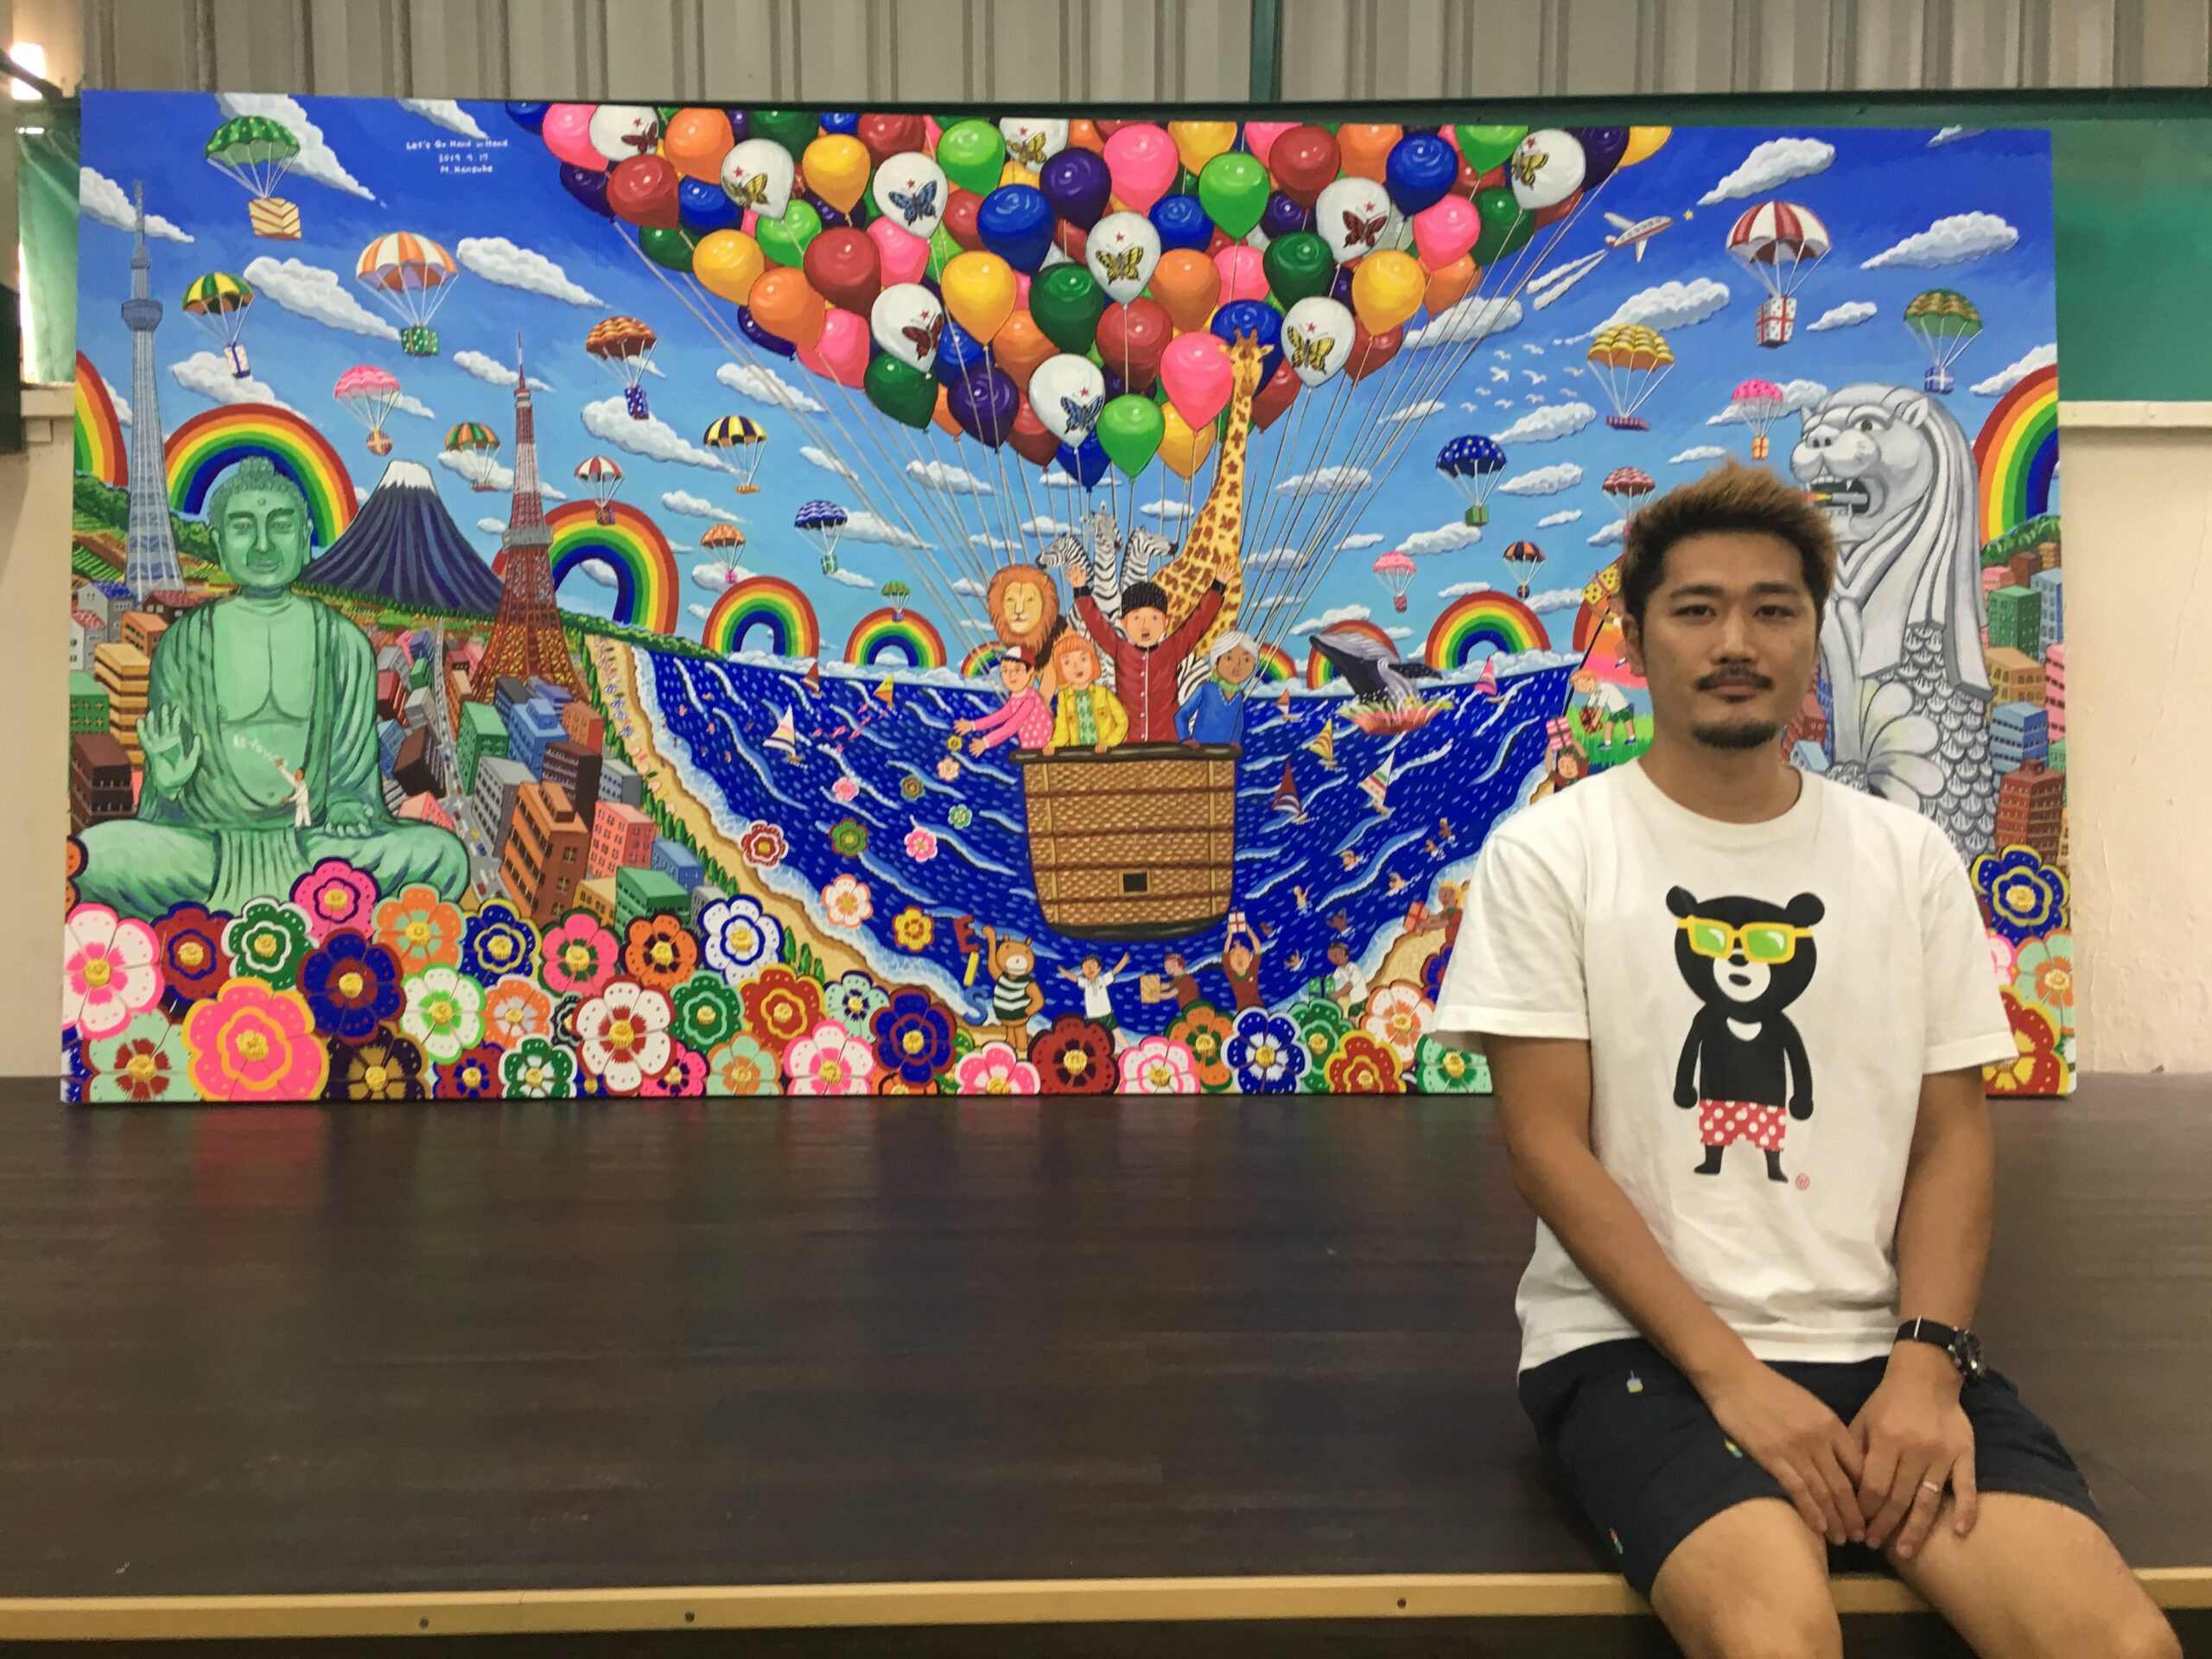 世界で壁画を制作するアーティスト 共同制作と個人制作の両軸をライフワークに Singalife 在シンガポール日本人向けのフリーマガジン グルメ 習い事 ビジネス 教育など充実の内容満載のウェブサイト